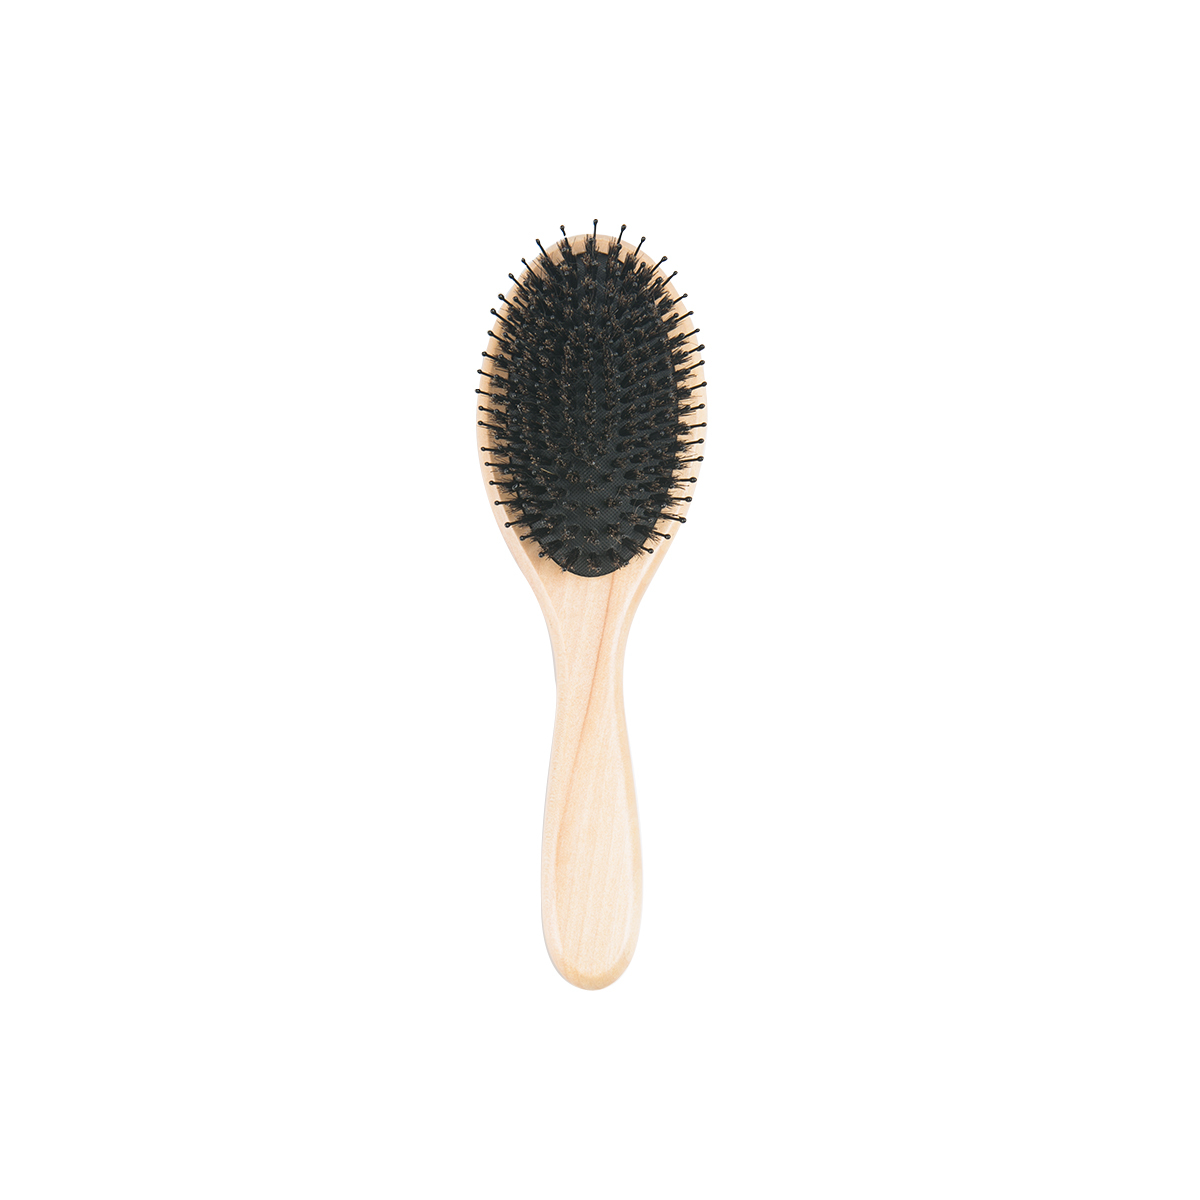 nylon bristle hair brush